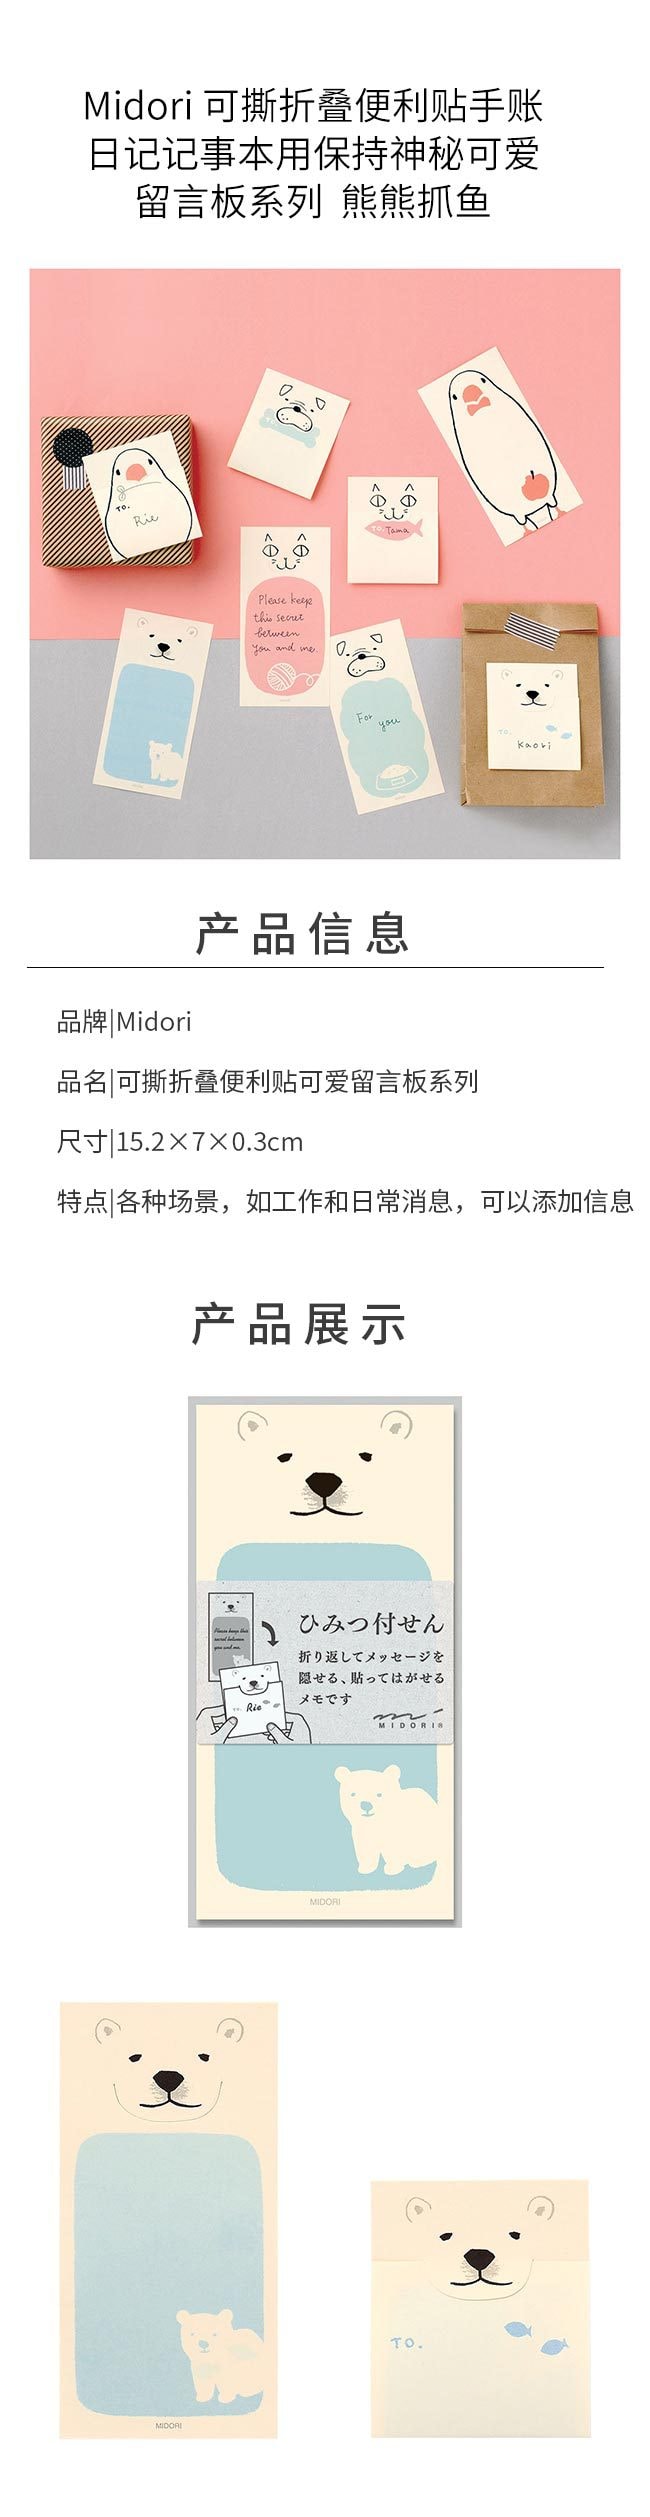 【文具周边】日本Midori 可折叠便利贴秘密留言卡片 创意便利贴 20枚入 熊熊抓鱼